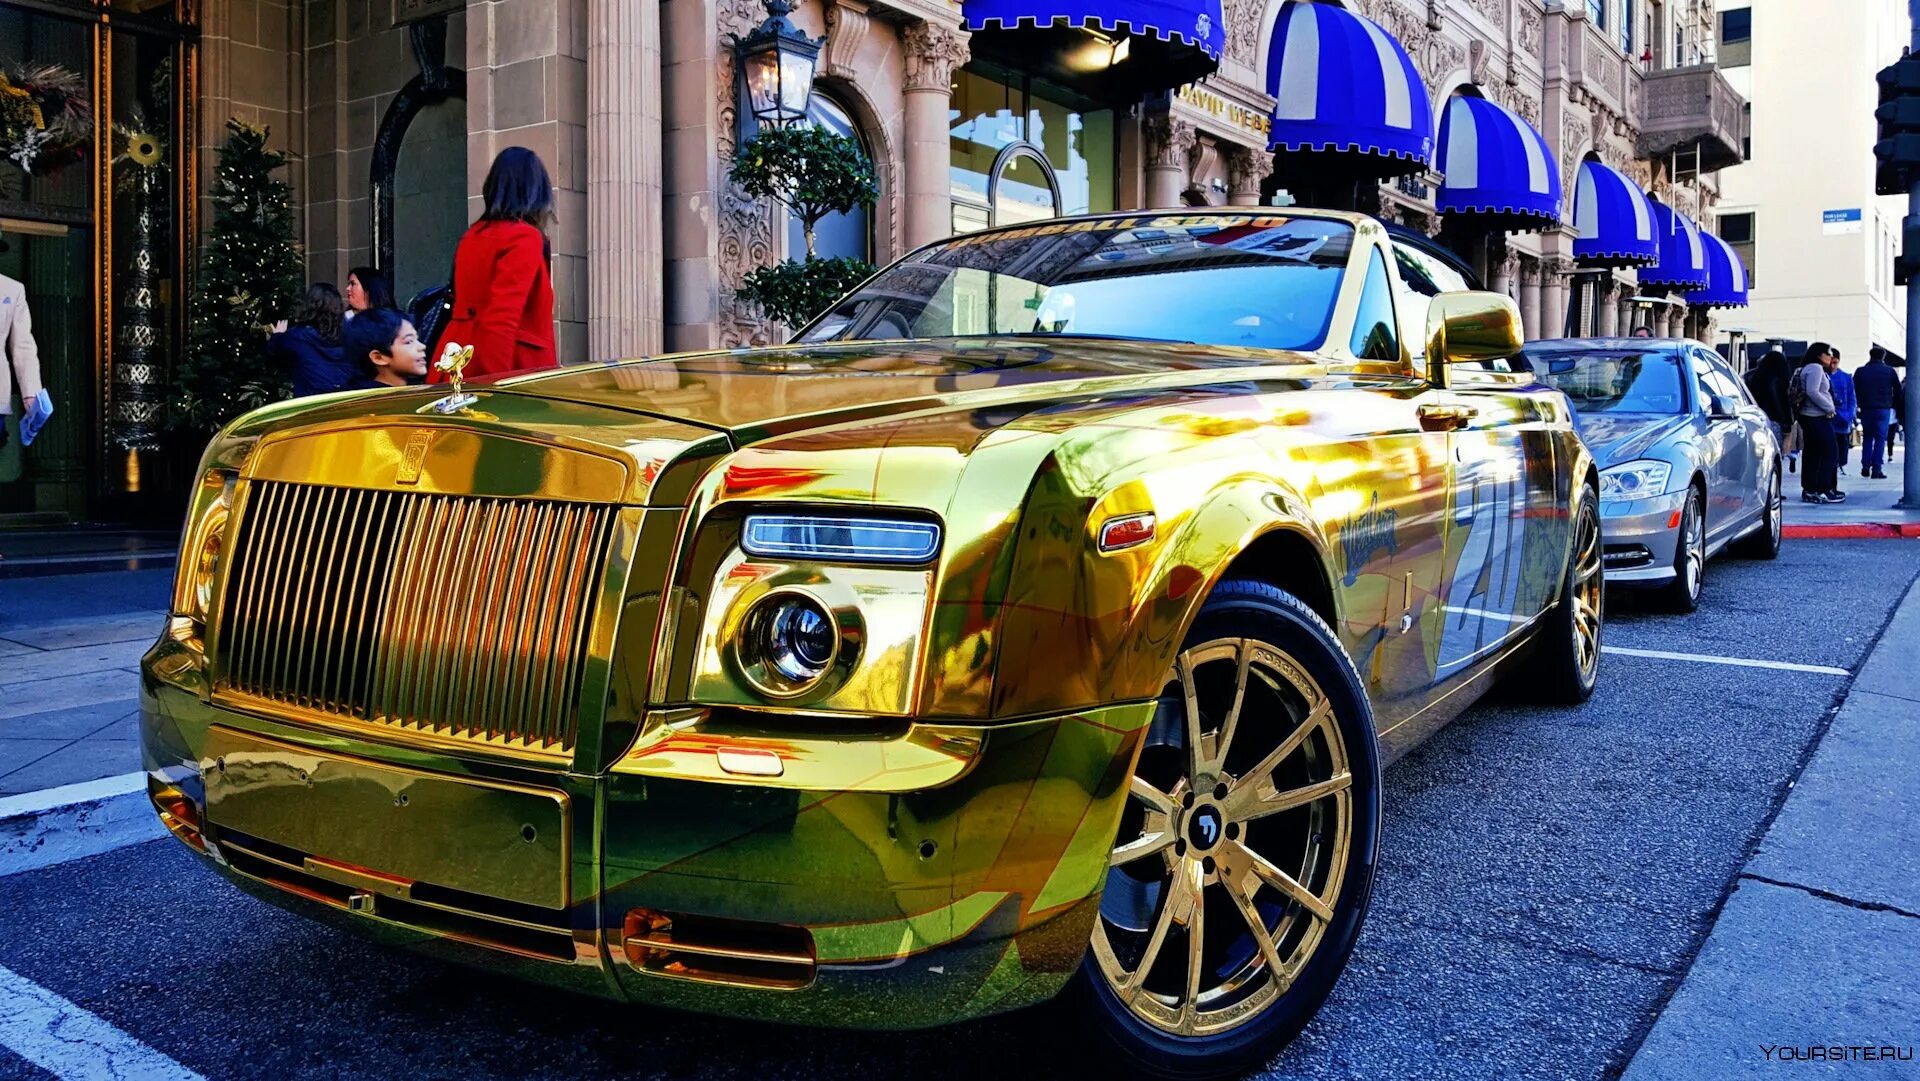 Золотой Роллс Ройс. Машина Роллс Ройс золотой. Rolls Royce Phantom Mansory золотой. Золотой Роллс Ройс шейха Дубая.